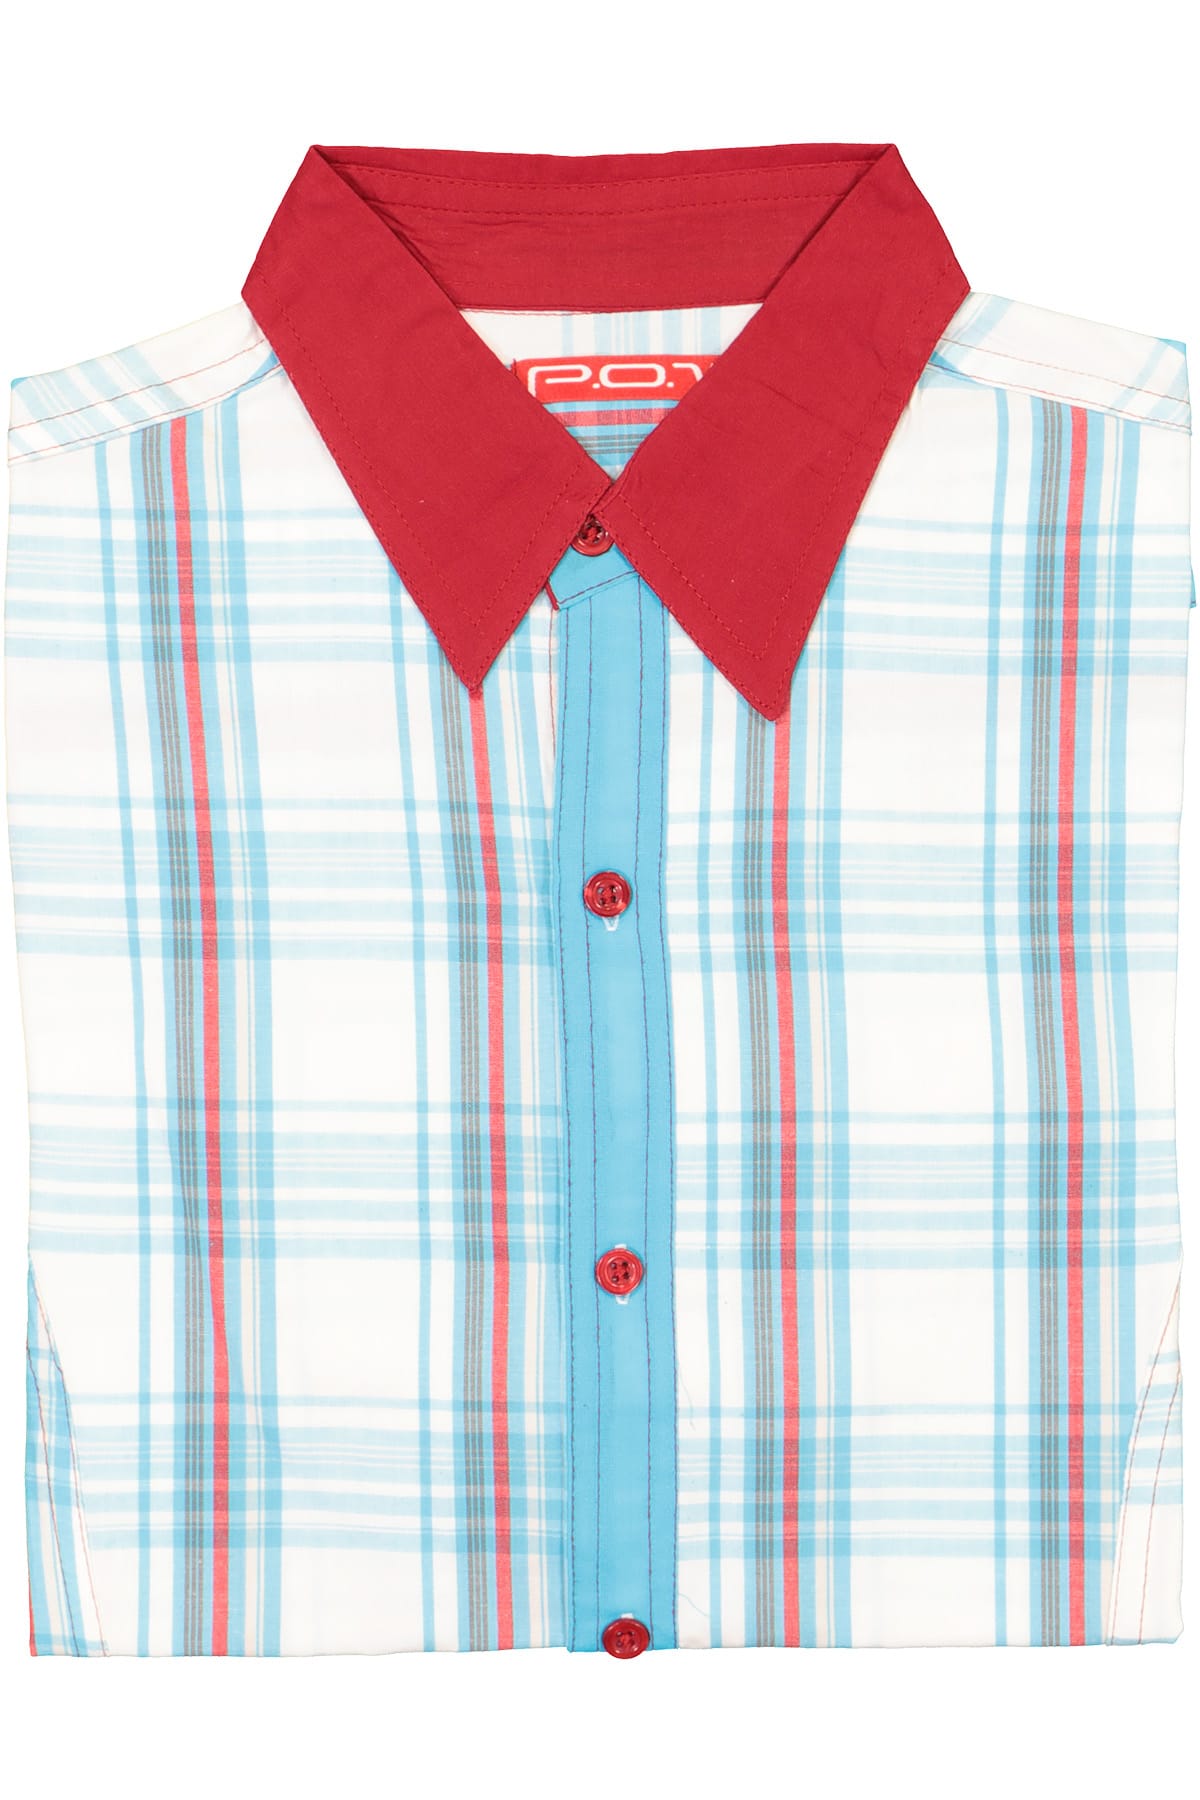 P.O.V. Aqua/Red Plaid Anthony Shirt